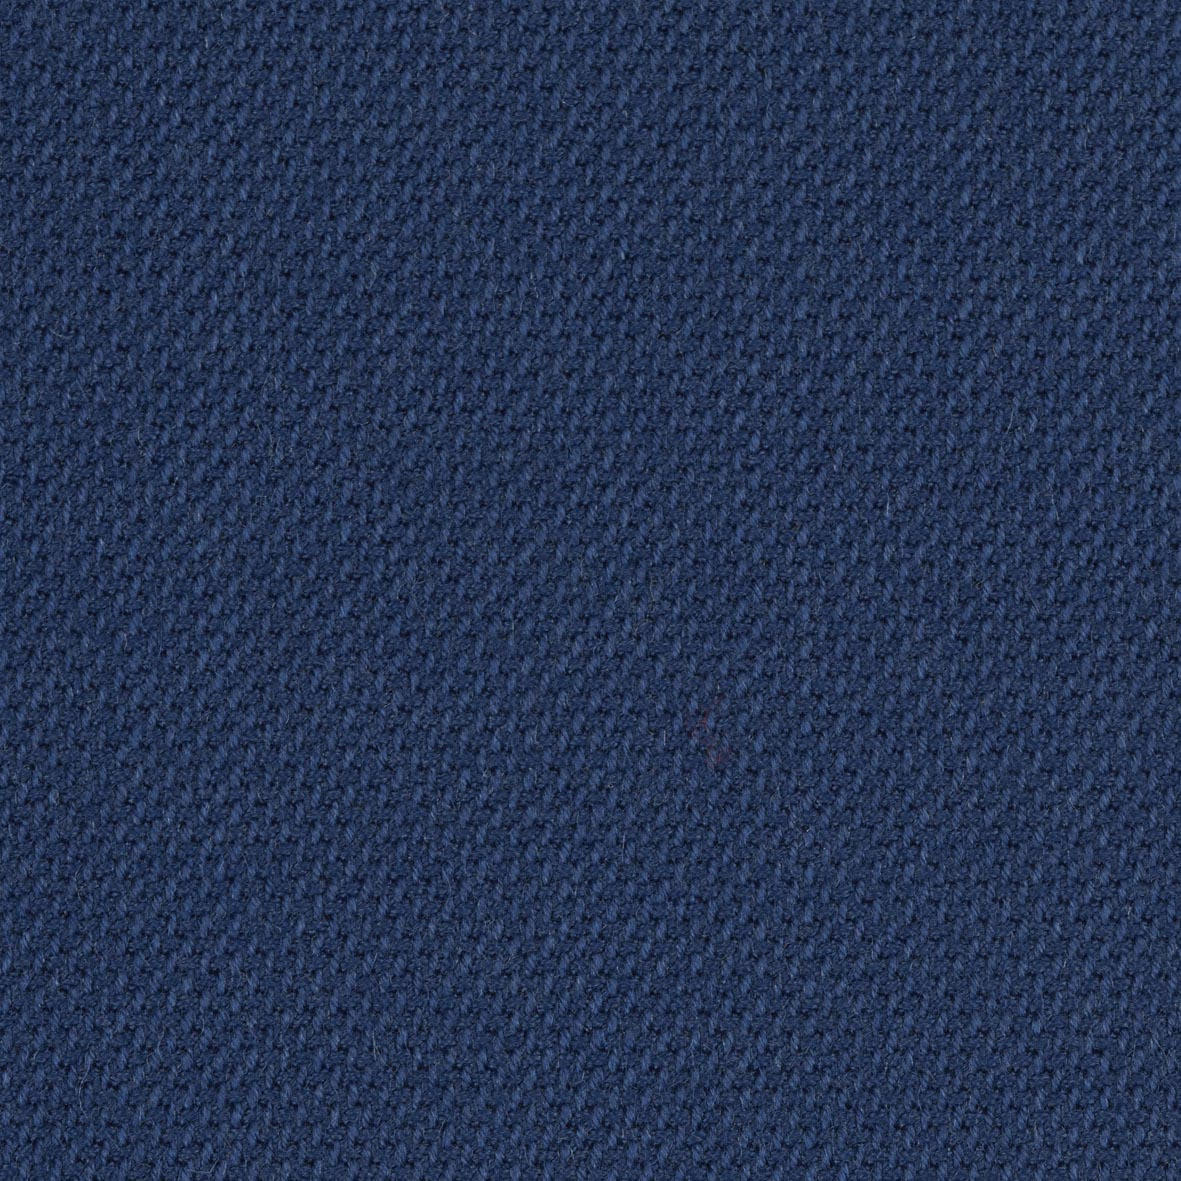 BÜROHOCKER Wollmischung Blau, Schwarz  - Blau/Schwarz, Basics, Kunststoff/Textil (55/105,115/55cm) - Aeris